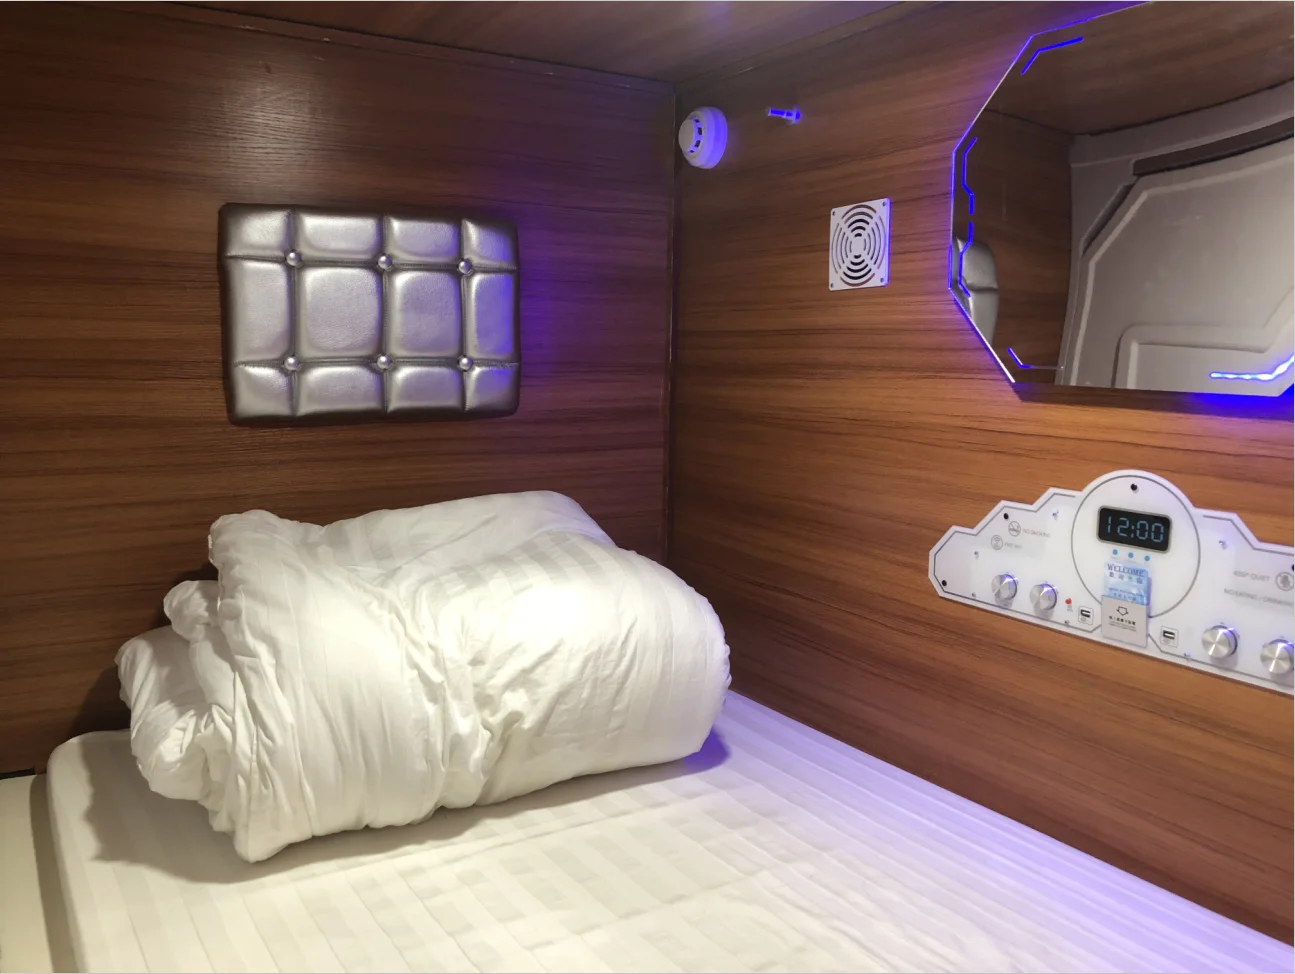 Капсульный отель Буран Москва. Кровать капсула м-861-а. Капсулы для сна Sleepbox. Кровать капсула для сна.